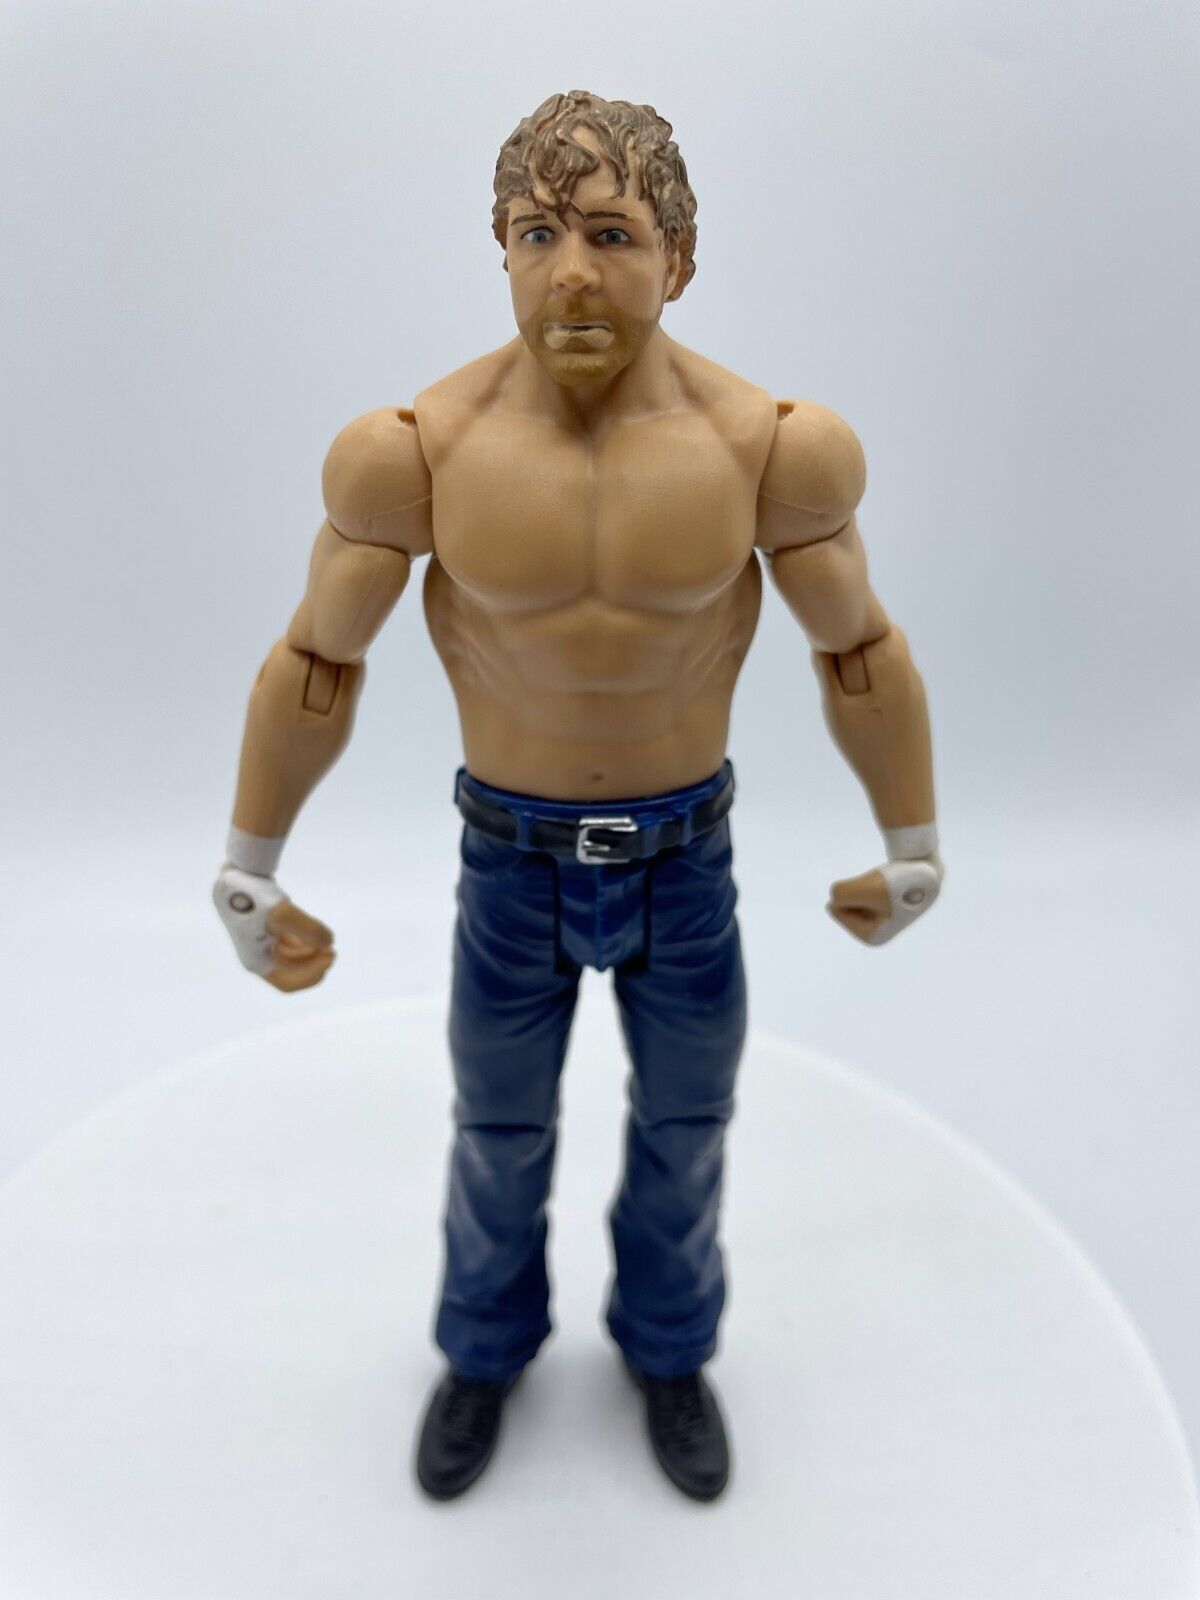 WWE Dean Ambrose Action Figure 2014 Shirtless 7" Wrestling Mattel Loose Toy - $7.59